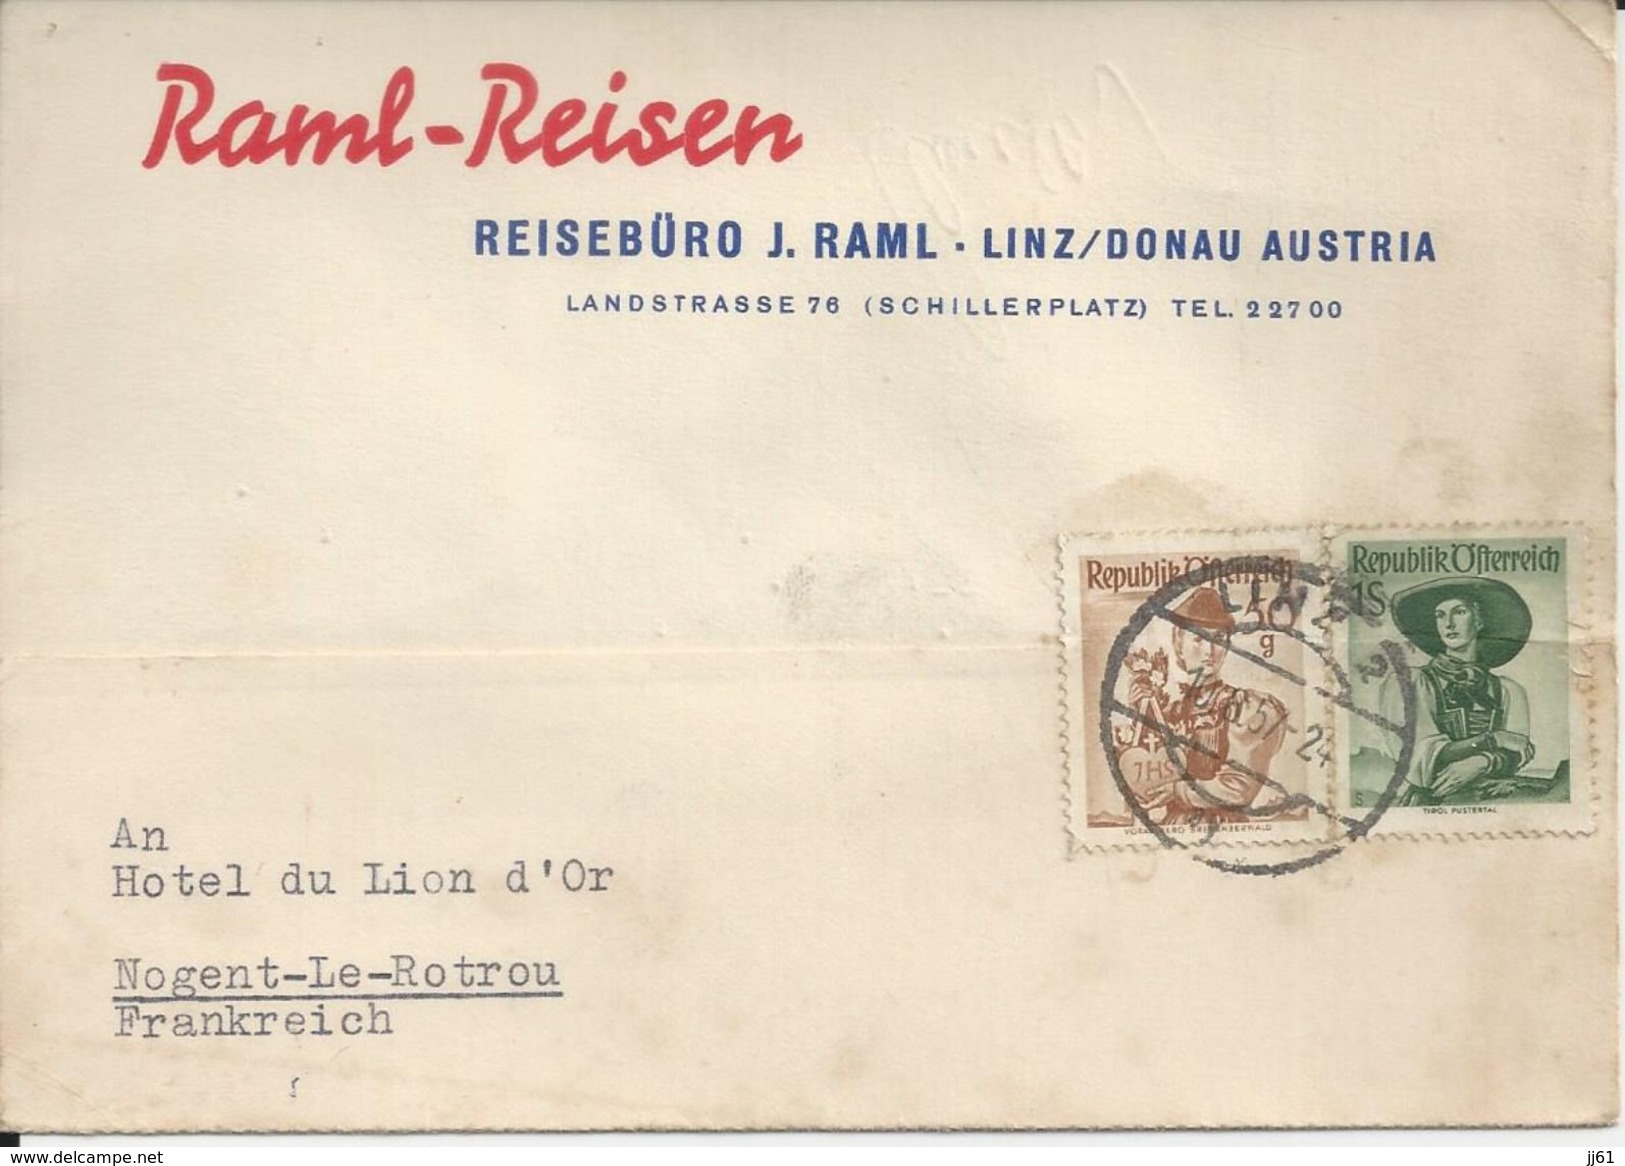 AUTRICHE RAIML REISEN REISEBURO J RAML LINZ DONAU CARTE ENVOYE A NOGENT LE ROTROU A L HOTEL DU LION D OR ANNEE 1957 - Austria